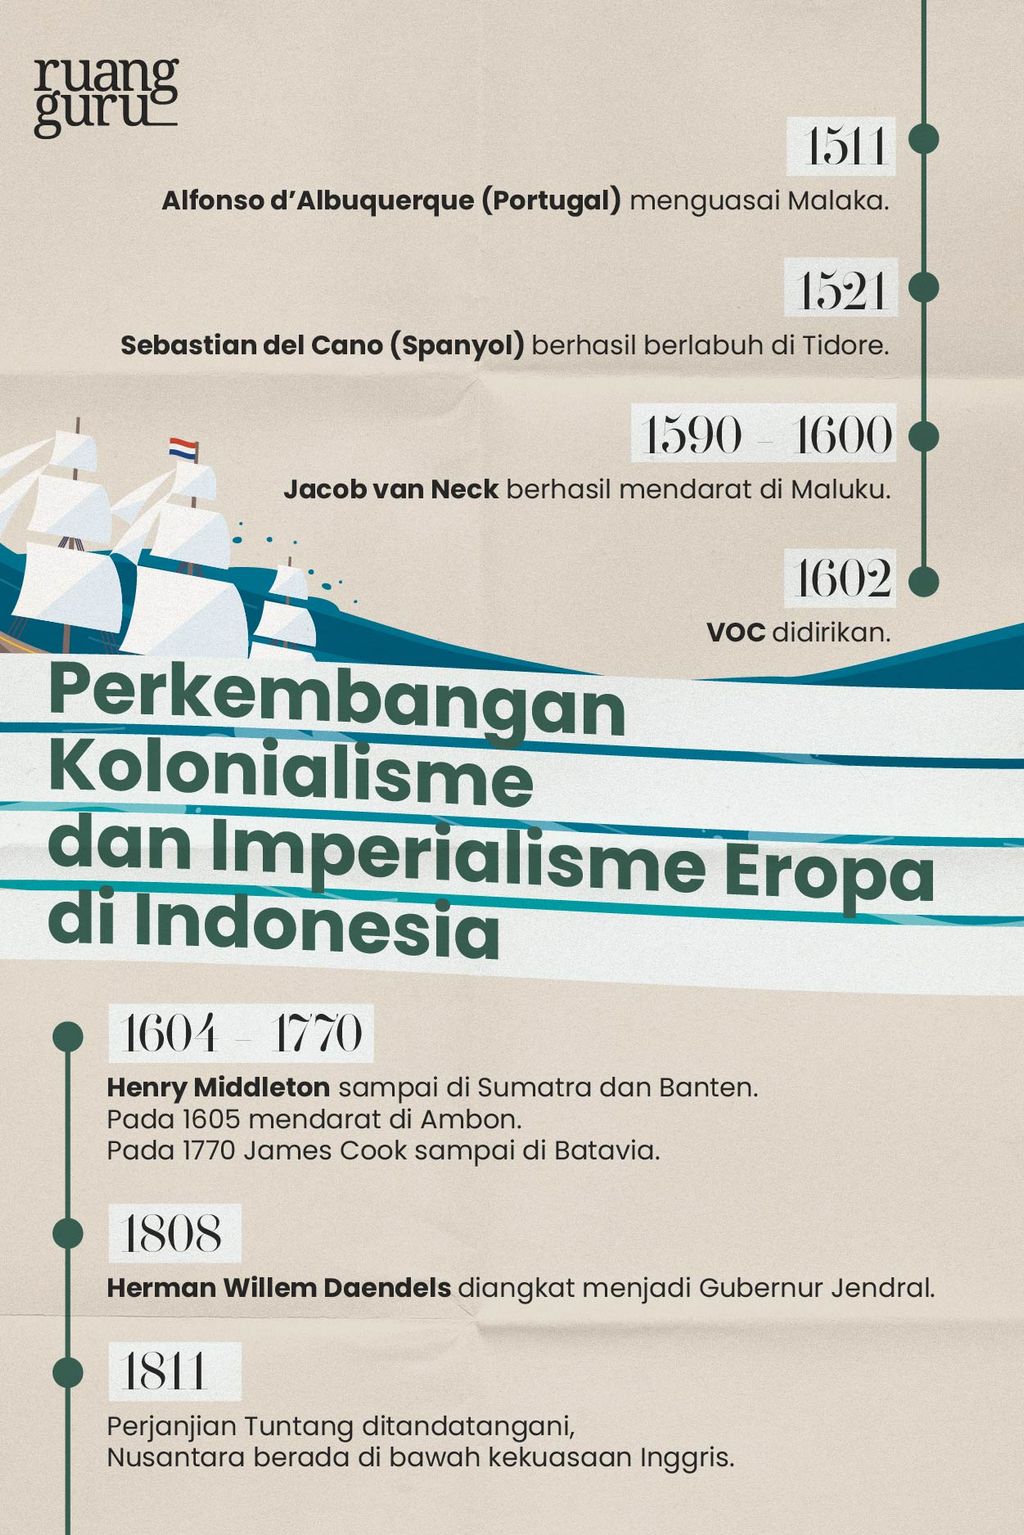 Timeline Perkembangan Kolonialisme dan Imperialisme Eropa di Indonesia